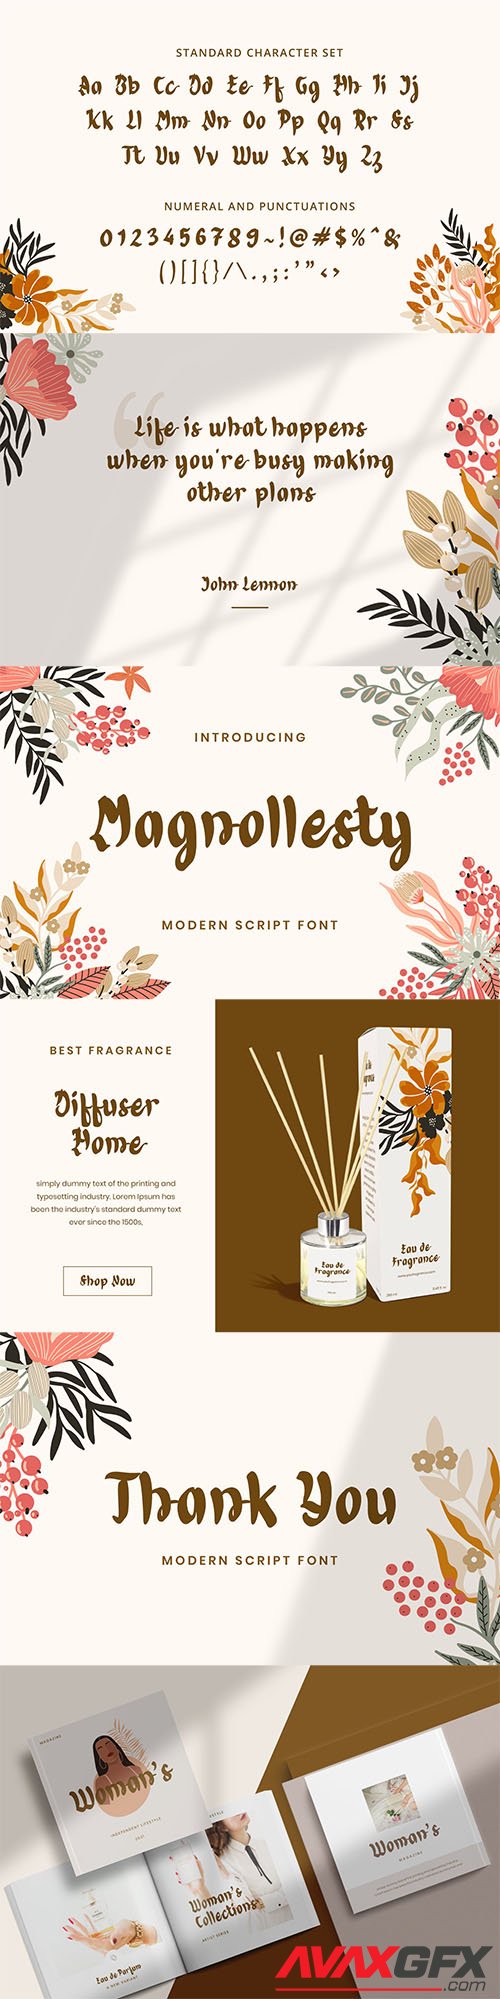 Magnollesty Modern Script Font